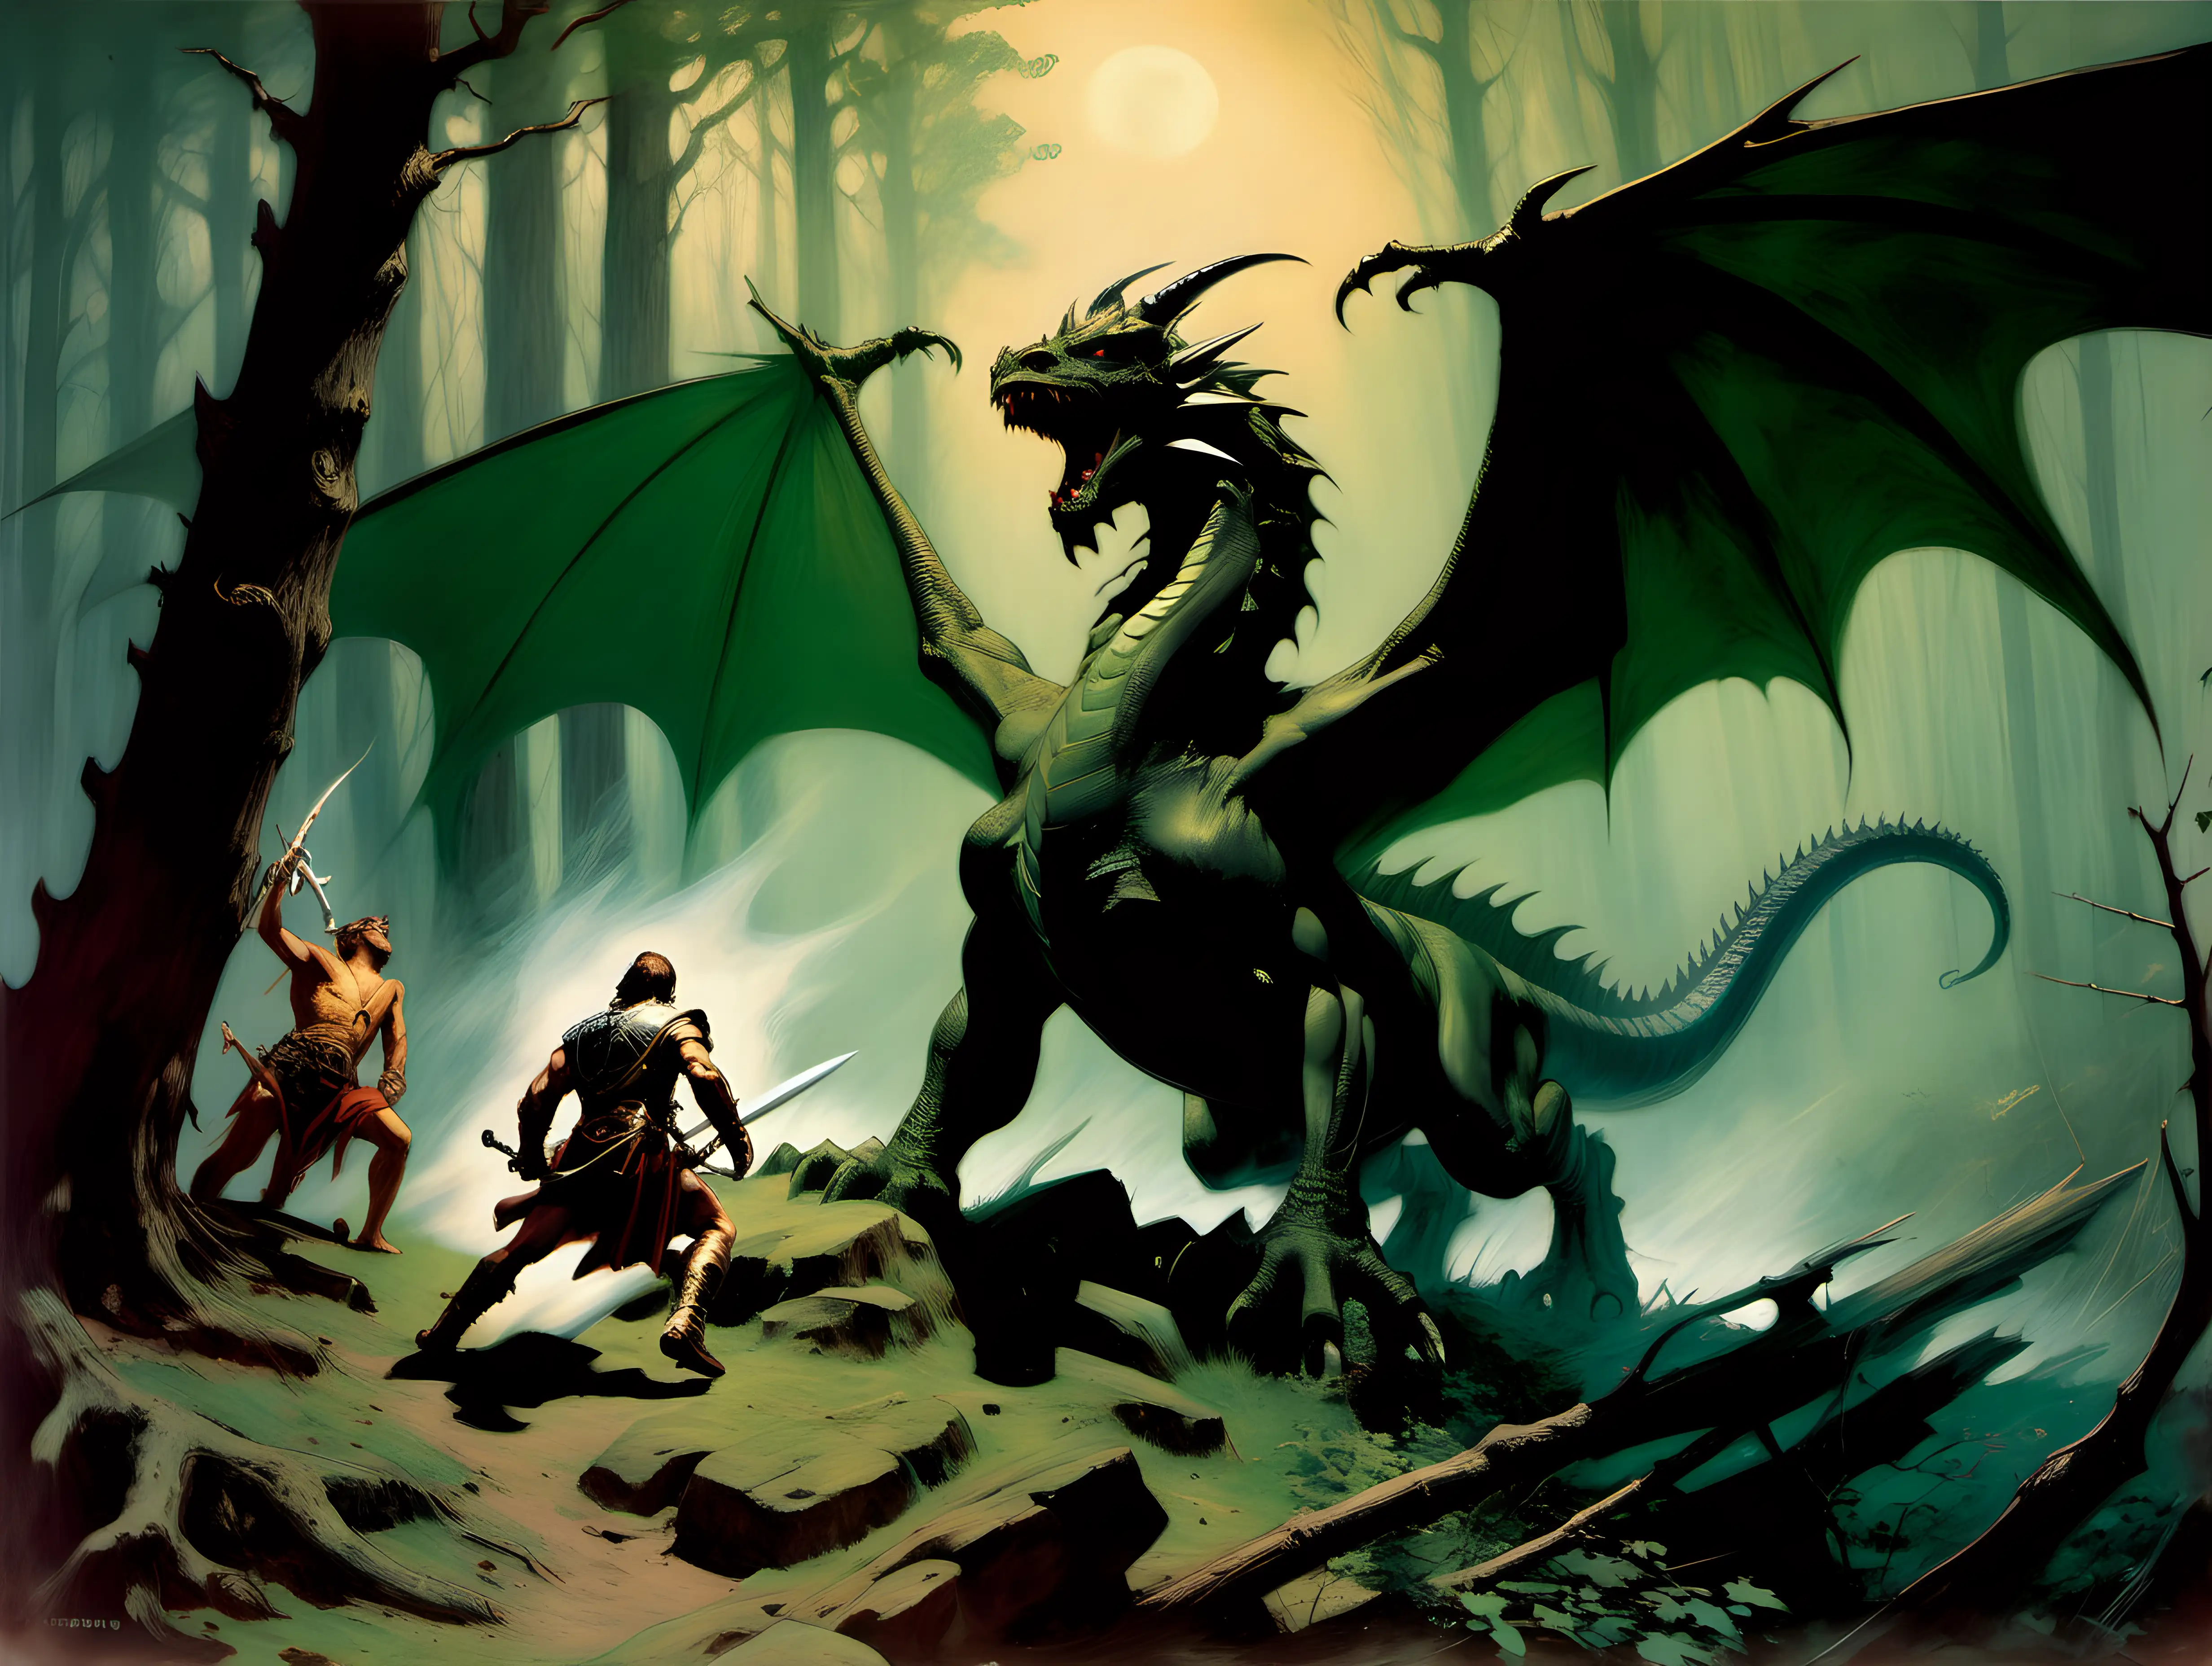 King Arthur slays a dragon in Sherwood forest
Frank Frazetta style